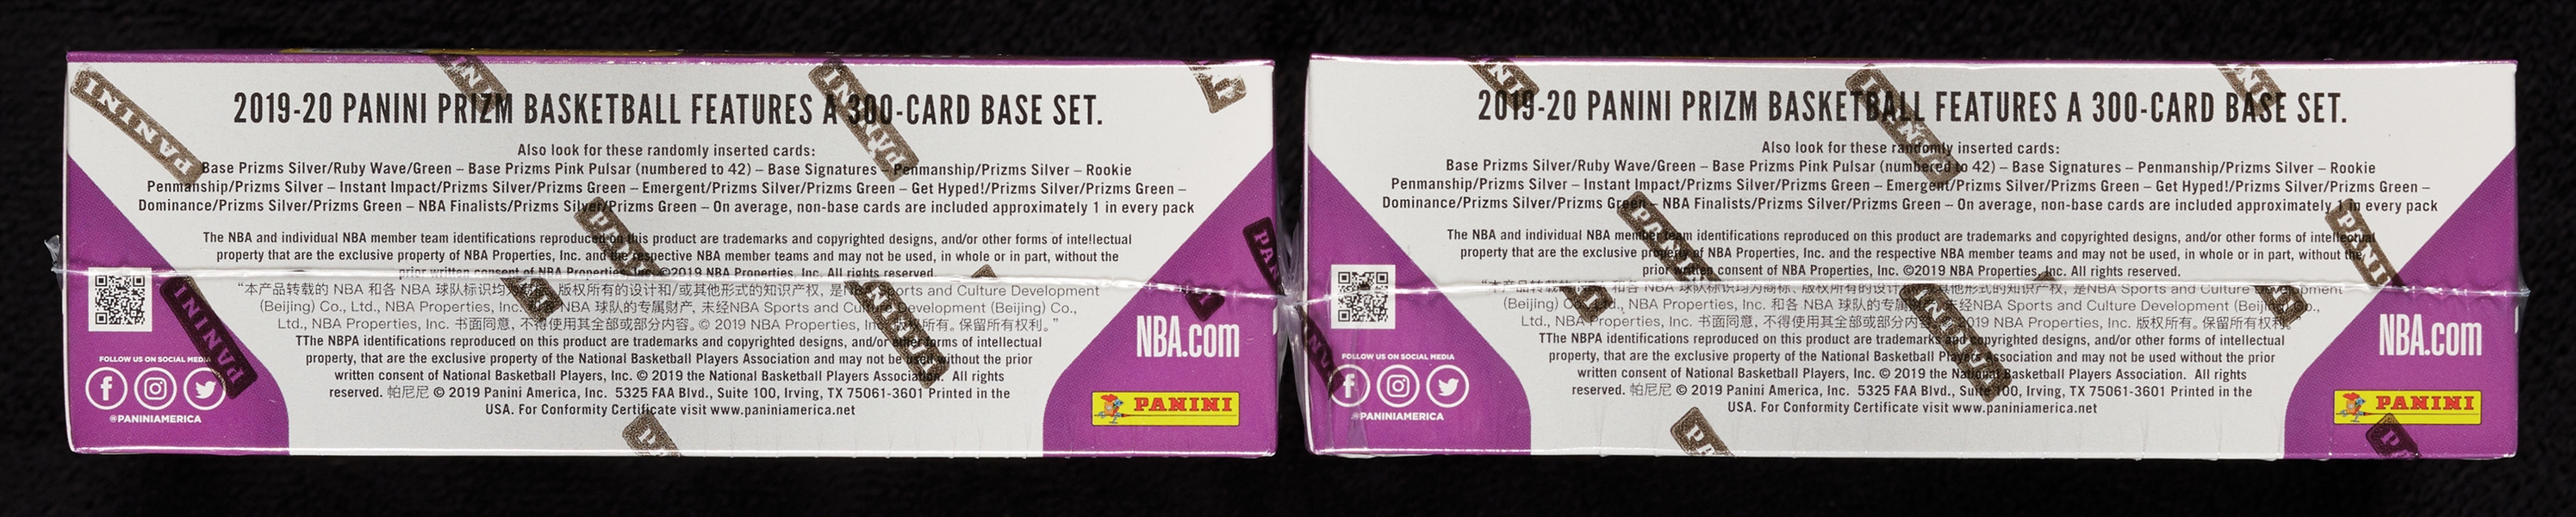 2019-20 Panini Prizm Basketball Retail Boxes Pair (2)